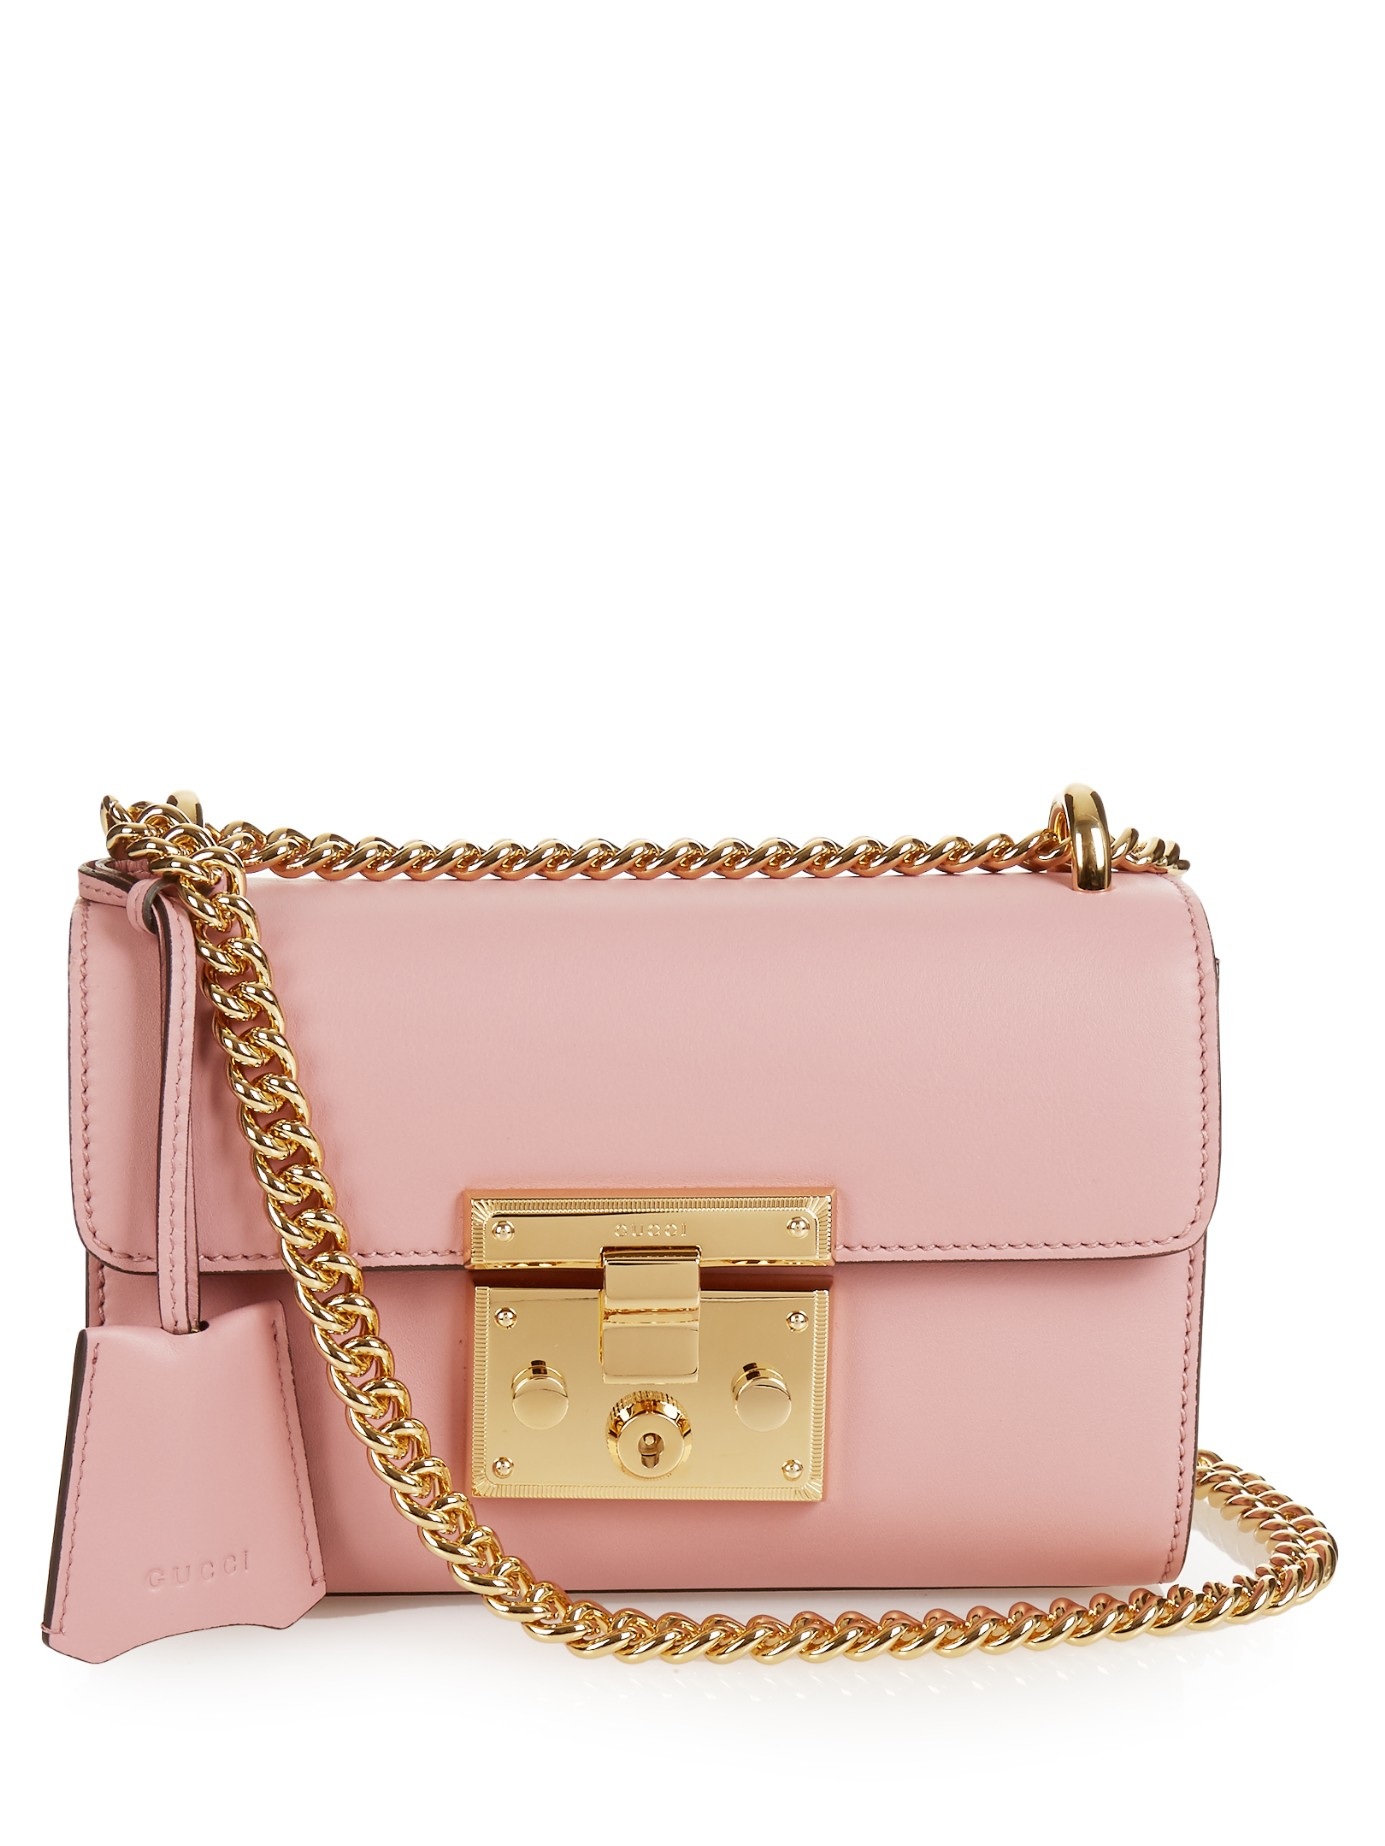 Gucci Padlock Jumbo GG Mini Bag in Pink